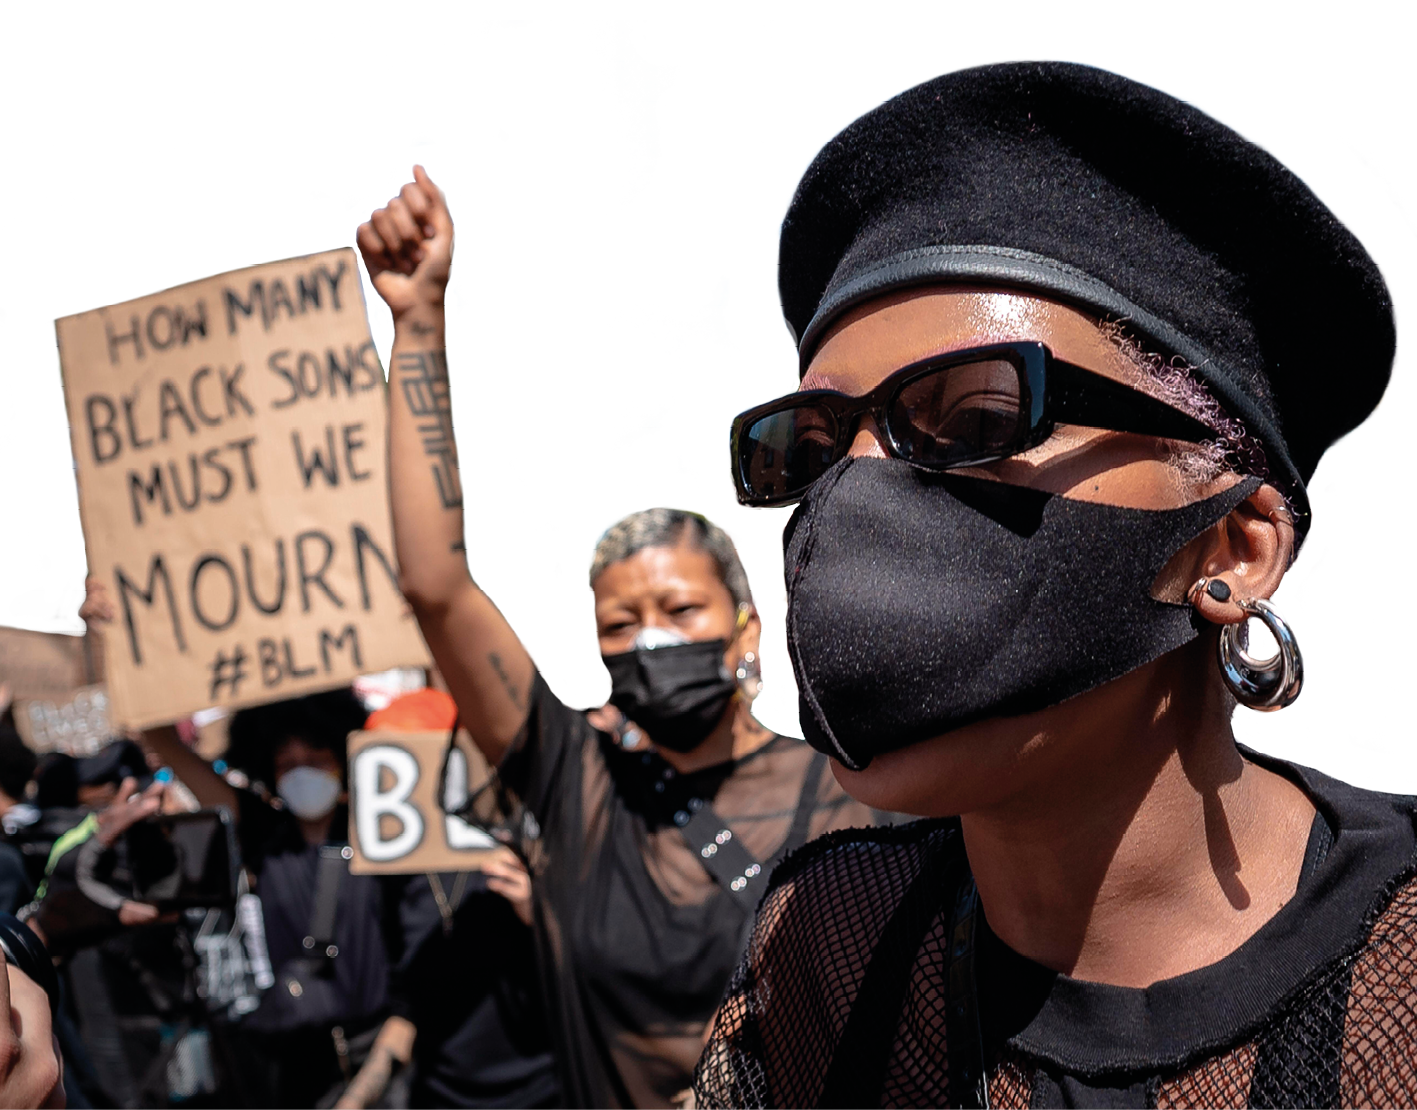 Fotografia. Destaque para duas mulheres negras usando roupas e máscaras de proteção facial, com boca e nariz cobertos. Uma delas usa uma boina. Ao fundo, pessoas carregam cartazes com frases escritas em inglês.